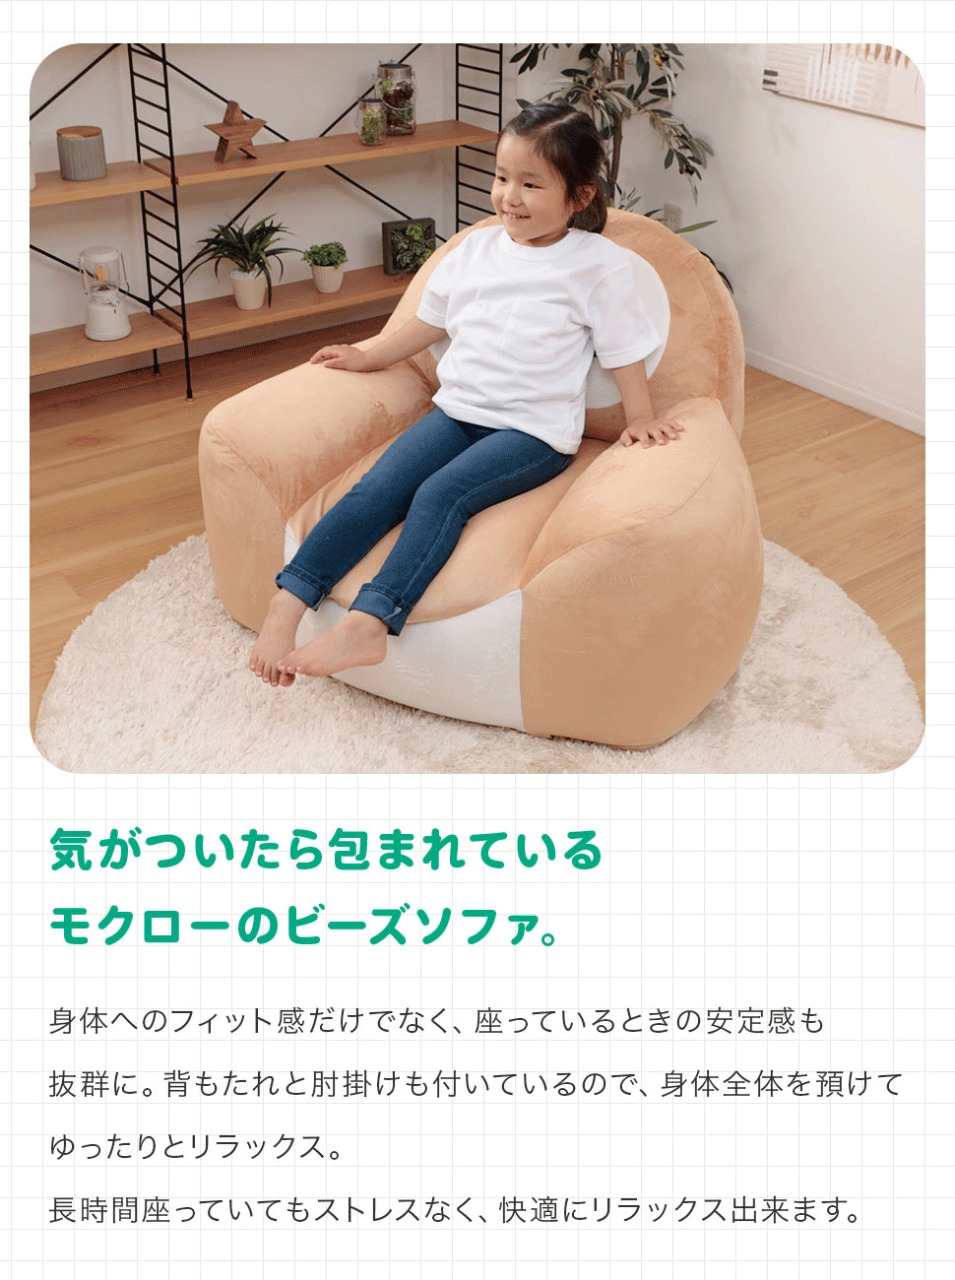 Pokémon: ¡Un sofa inspirado en Rowlet ha sido anunciado en Japón! 23